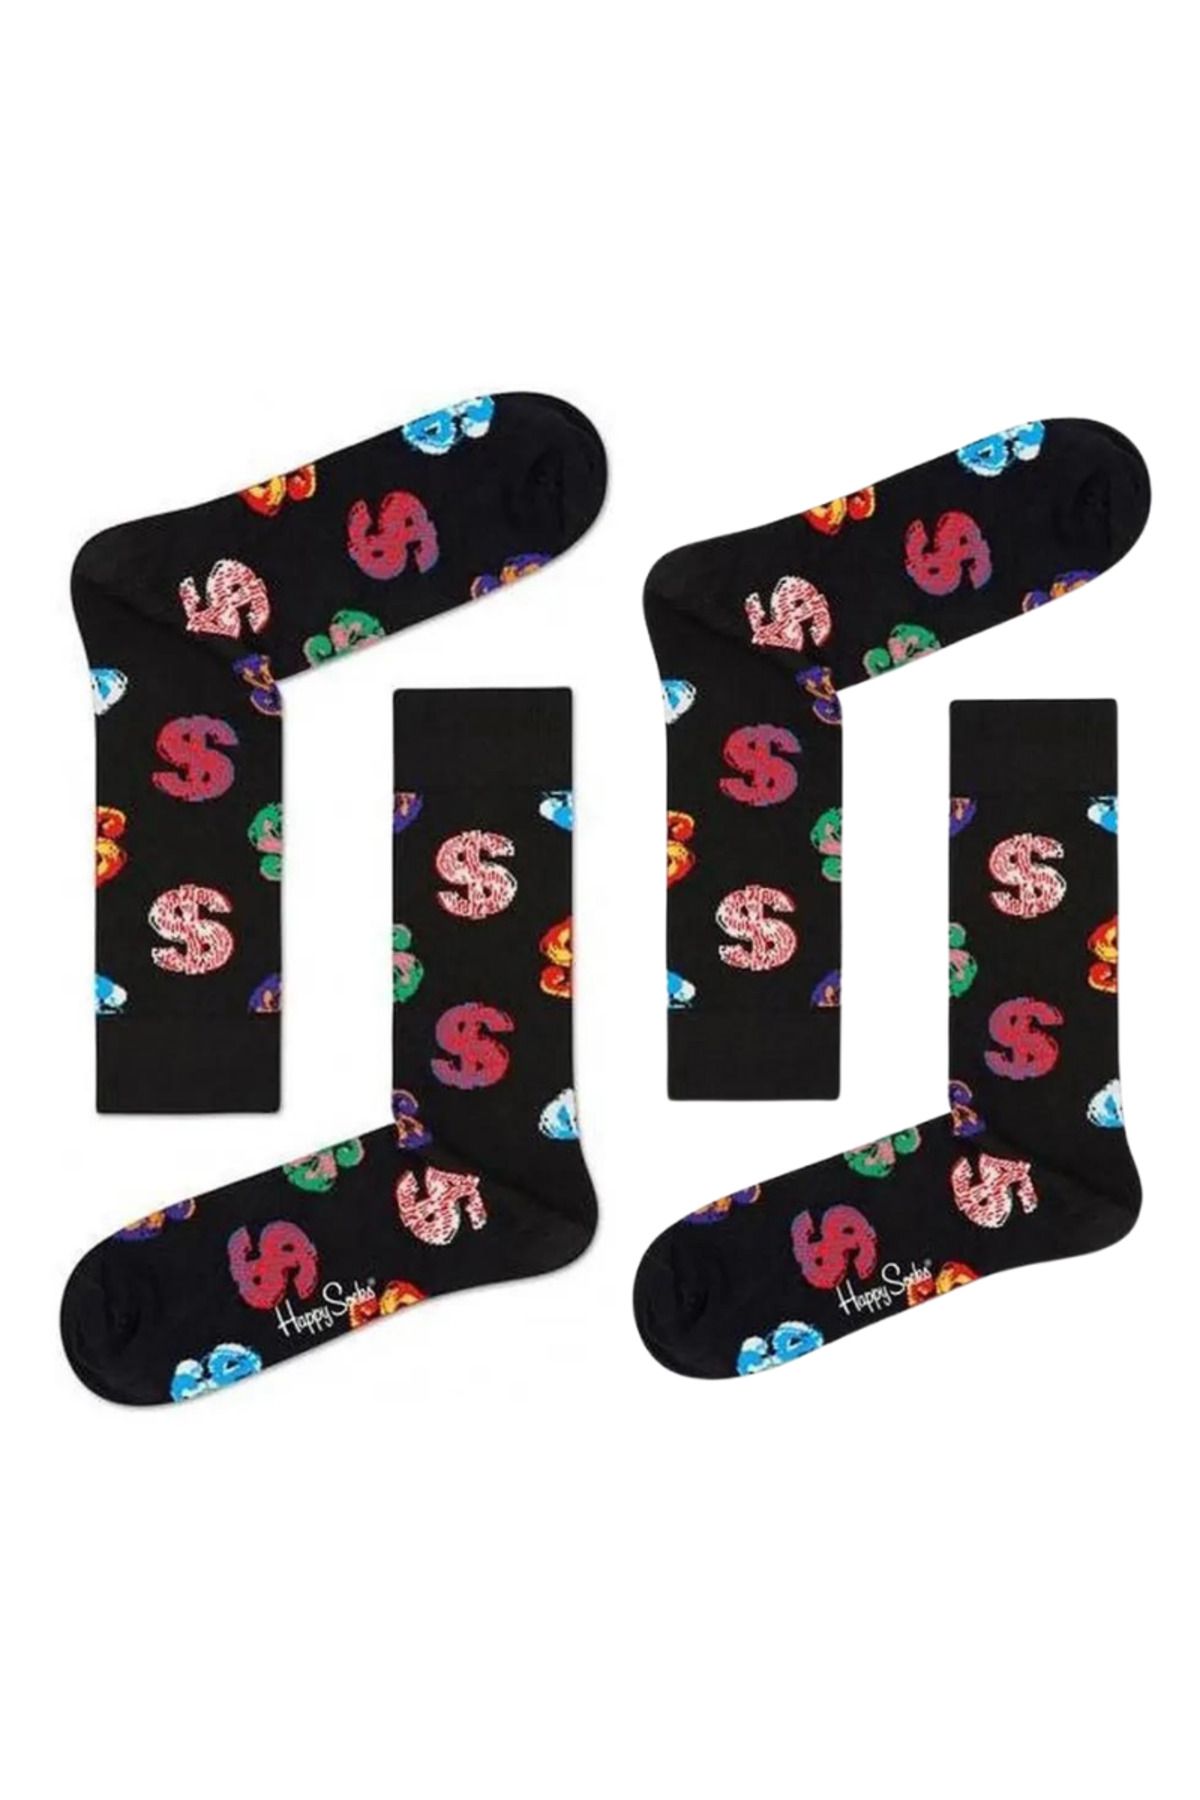 Happy Socks Zetro Özel Seri Ithal 2'li Paket Dolar $ Temalı Dikişsiz Unısex Çift Çorabı